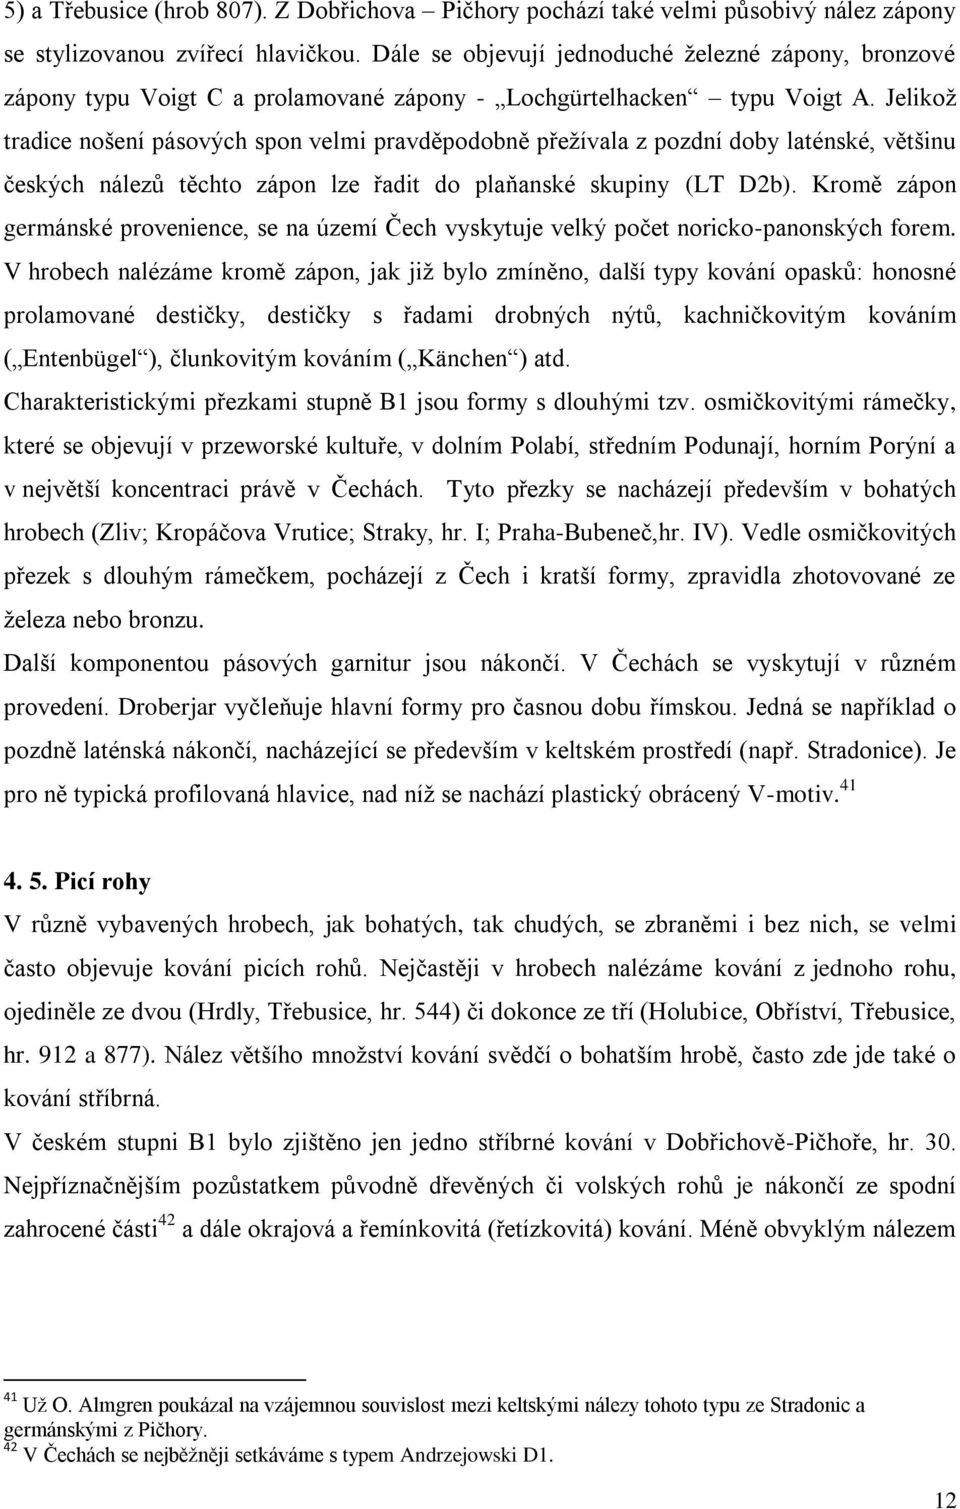 Jelikoţ tradice nošení pásových spon velmi pravděpodobně přeţívala z pozdní doby laténské, většinu českých nálezů těchto zápon lze řadit do plaňanské skupiny (LT D2b).